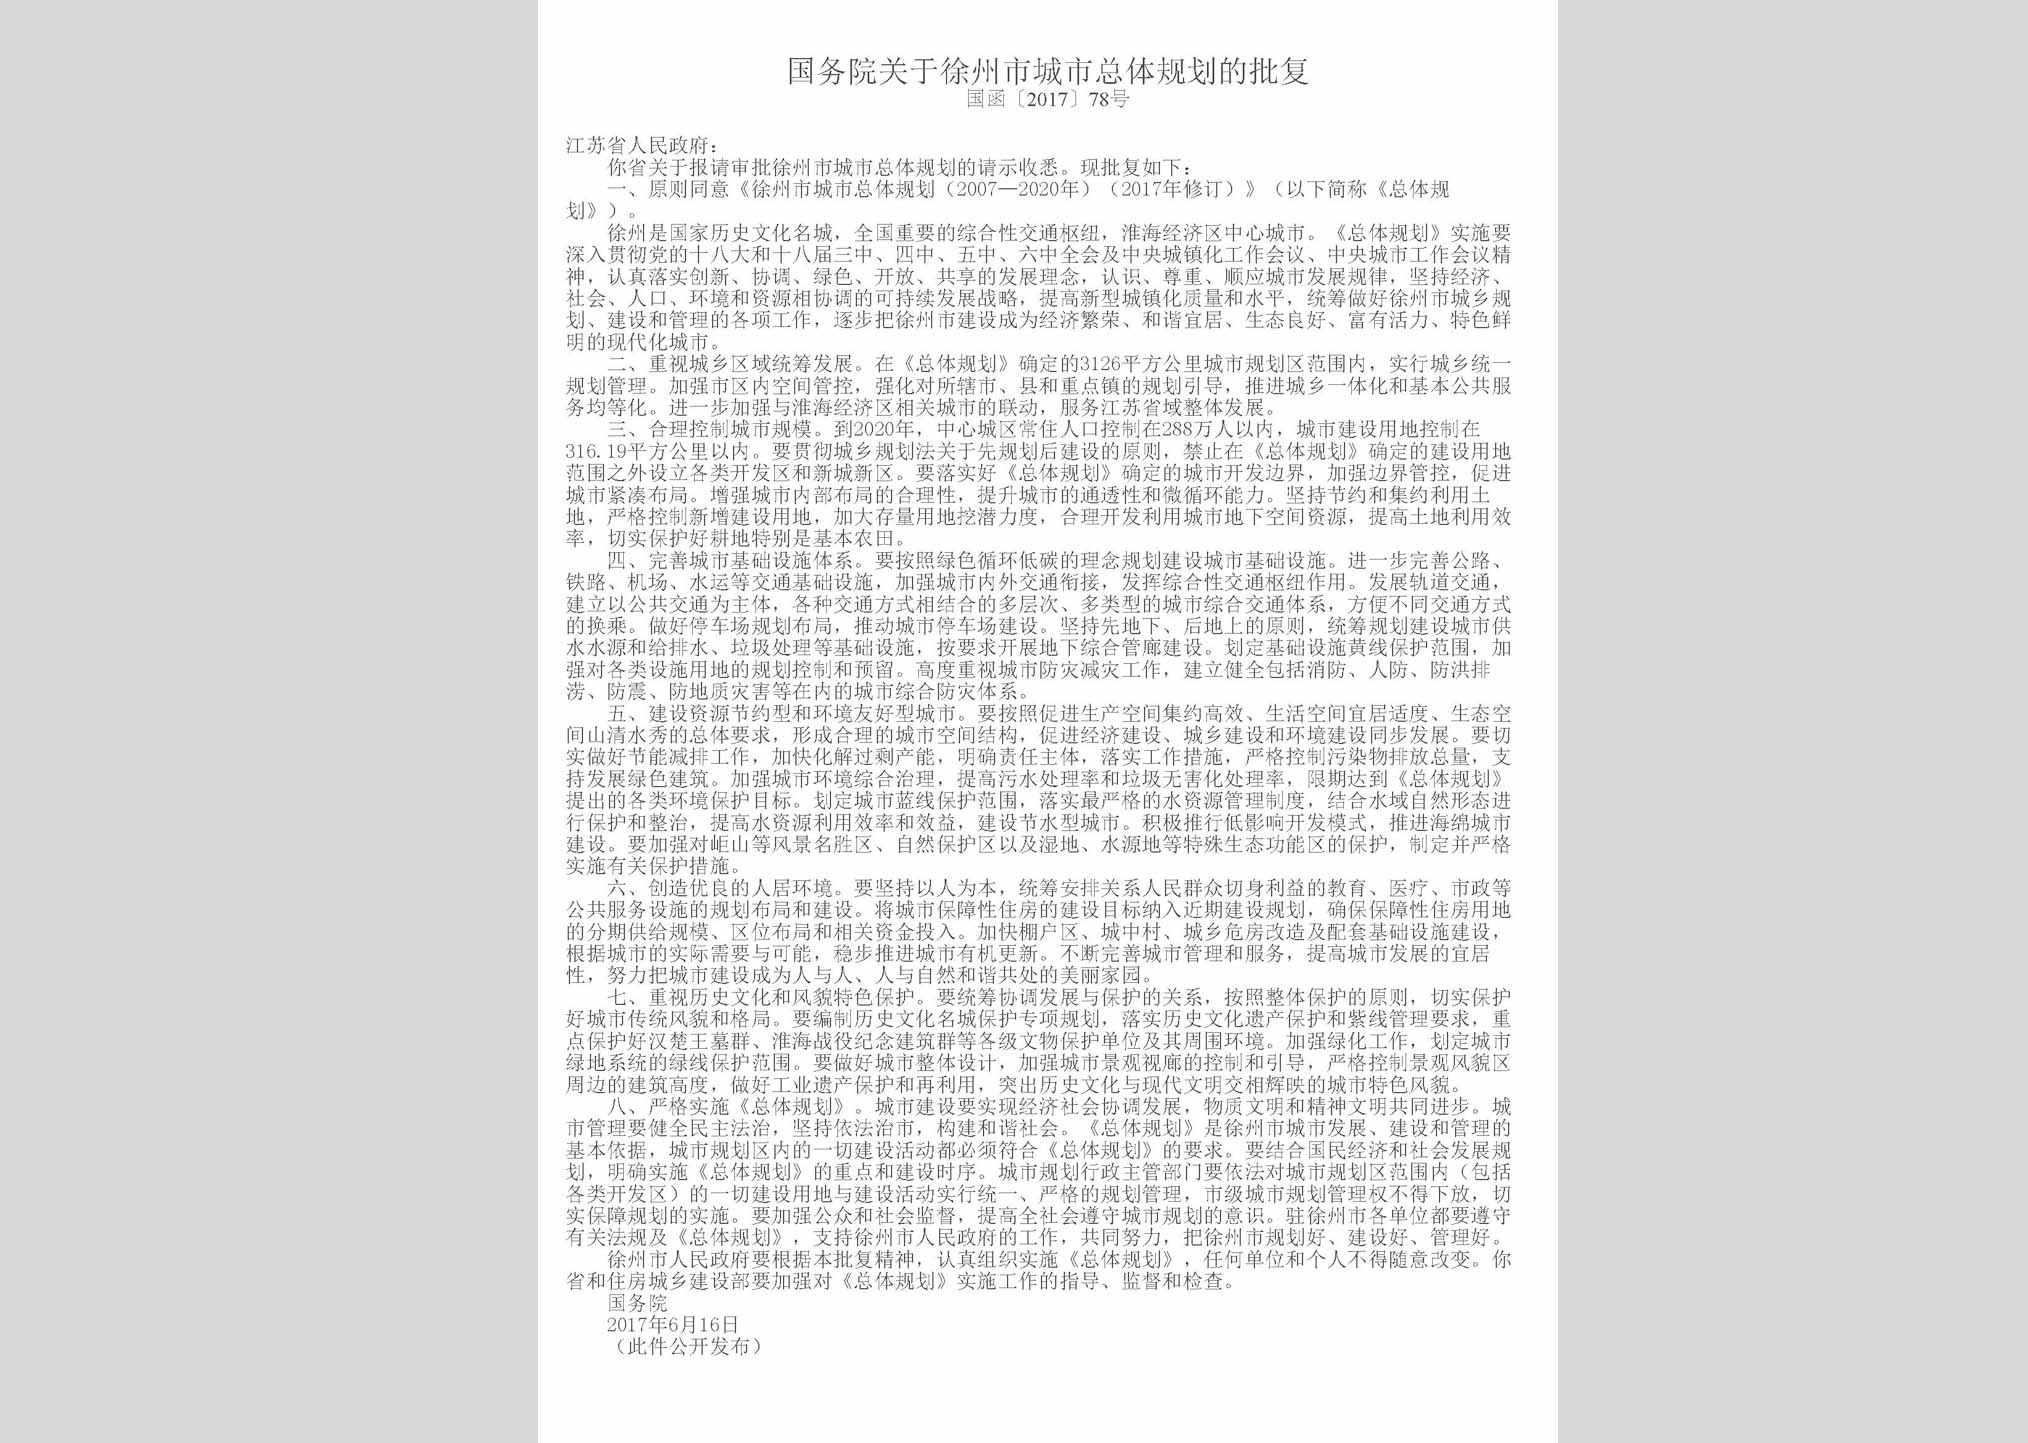 国函[2017]78号：国务院关于徐州市城市总体规划的批复